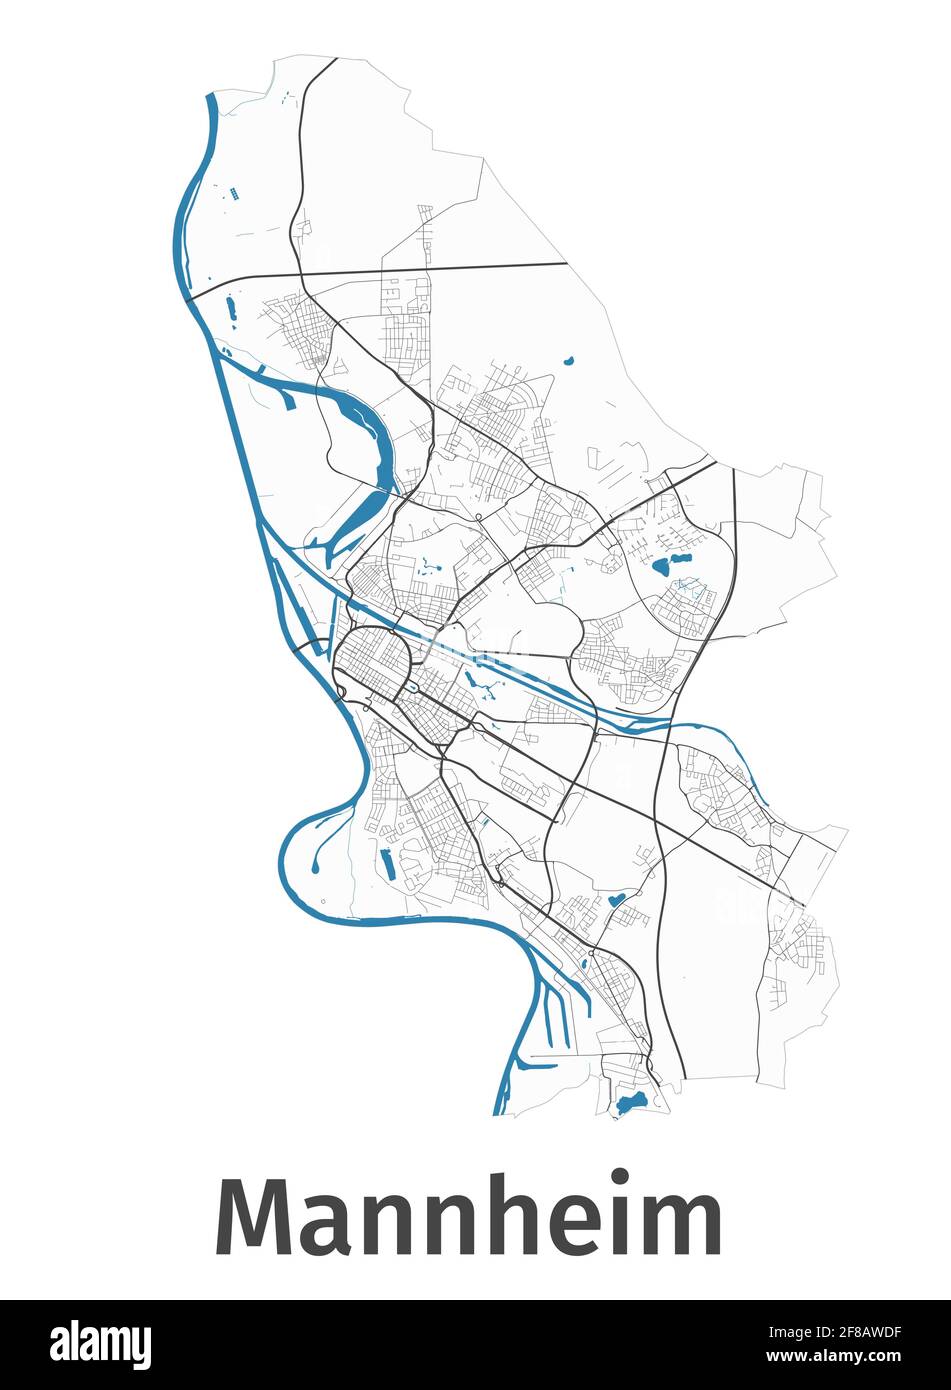 Mappa di Mannheim. Mappa dettagliata dell'area amministrativa della città di Mannheim. Panorama cittadino. Illustrazione vettoriale priva di royalty. Mappa con autostrade, stre Illustrazione Vettoriale